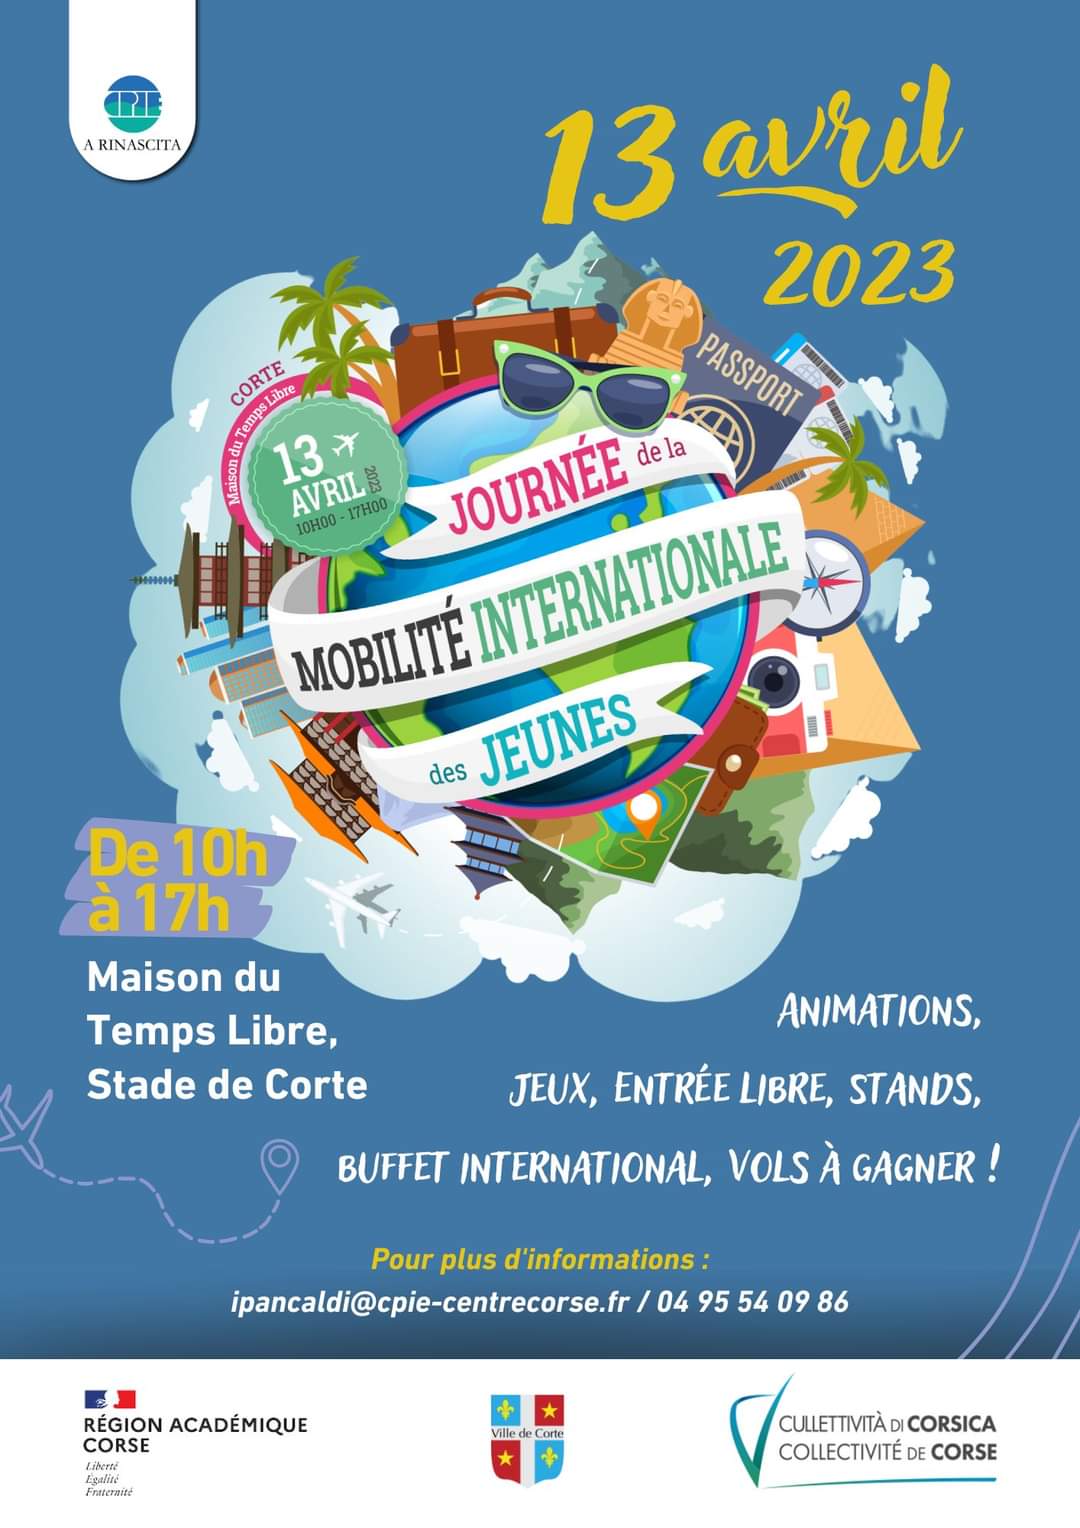 Journée de la mobilité internationale des jeunes le 13 avril à Corti